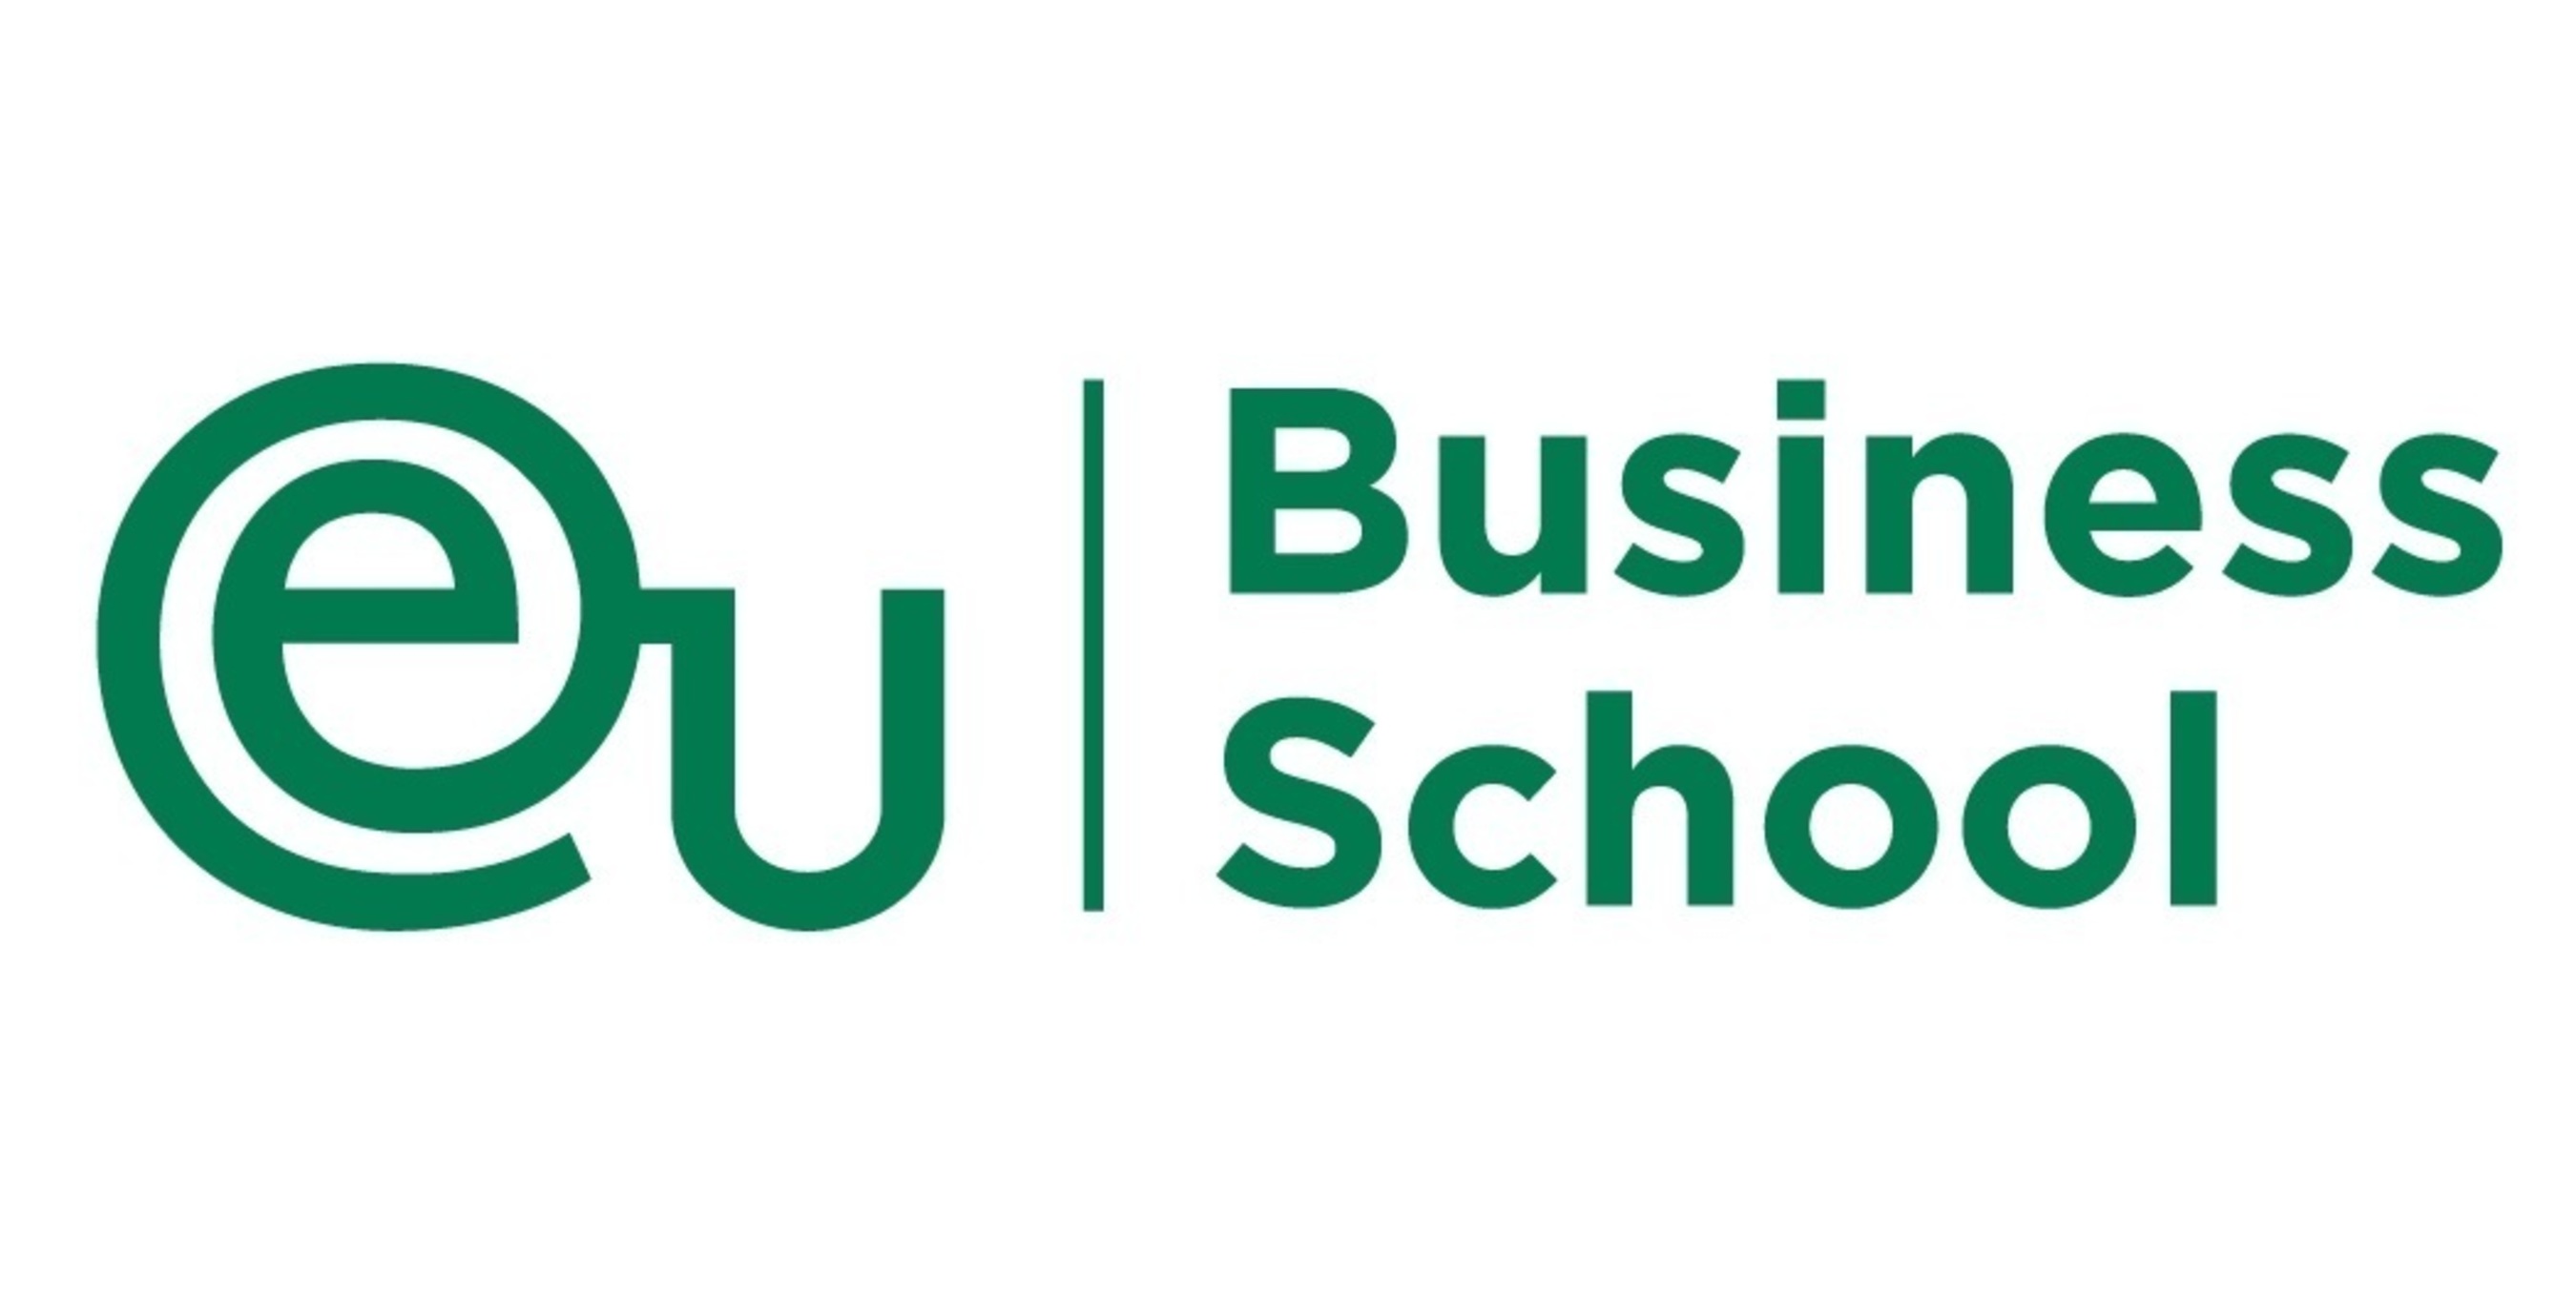 EU Business School Logo (PRNewsFoto/EU Business School)